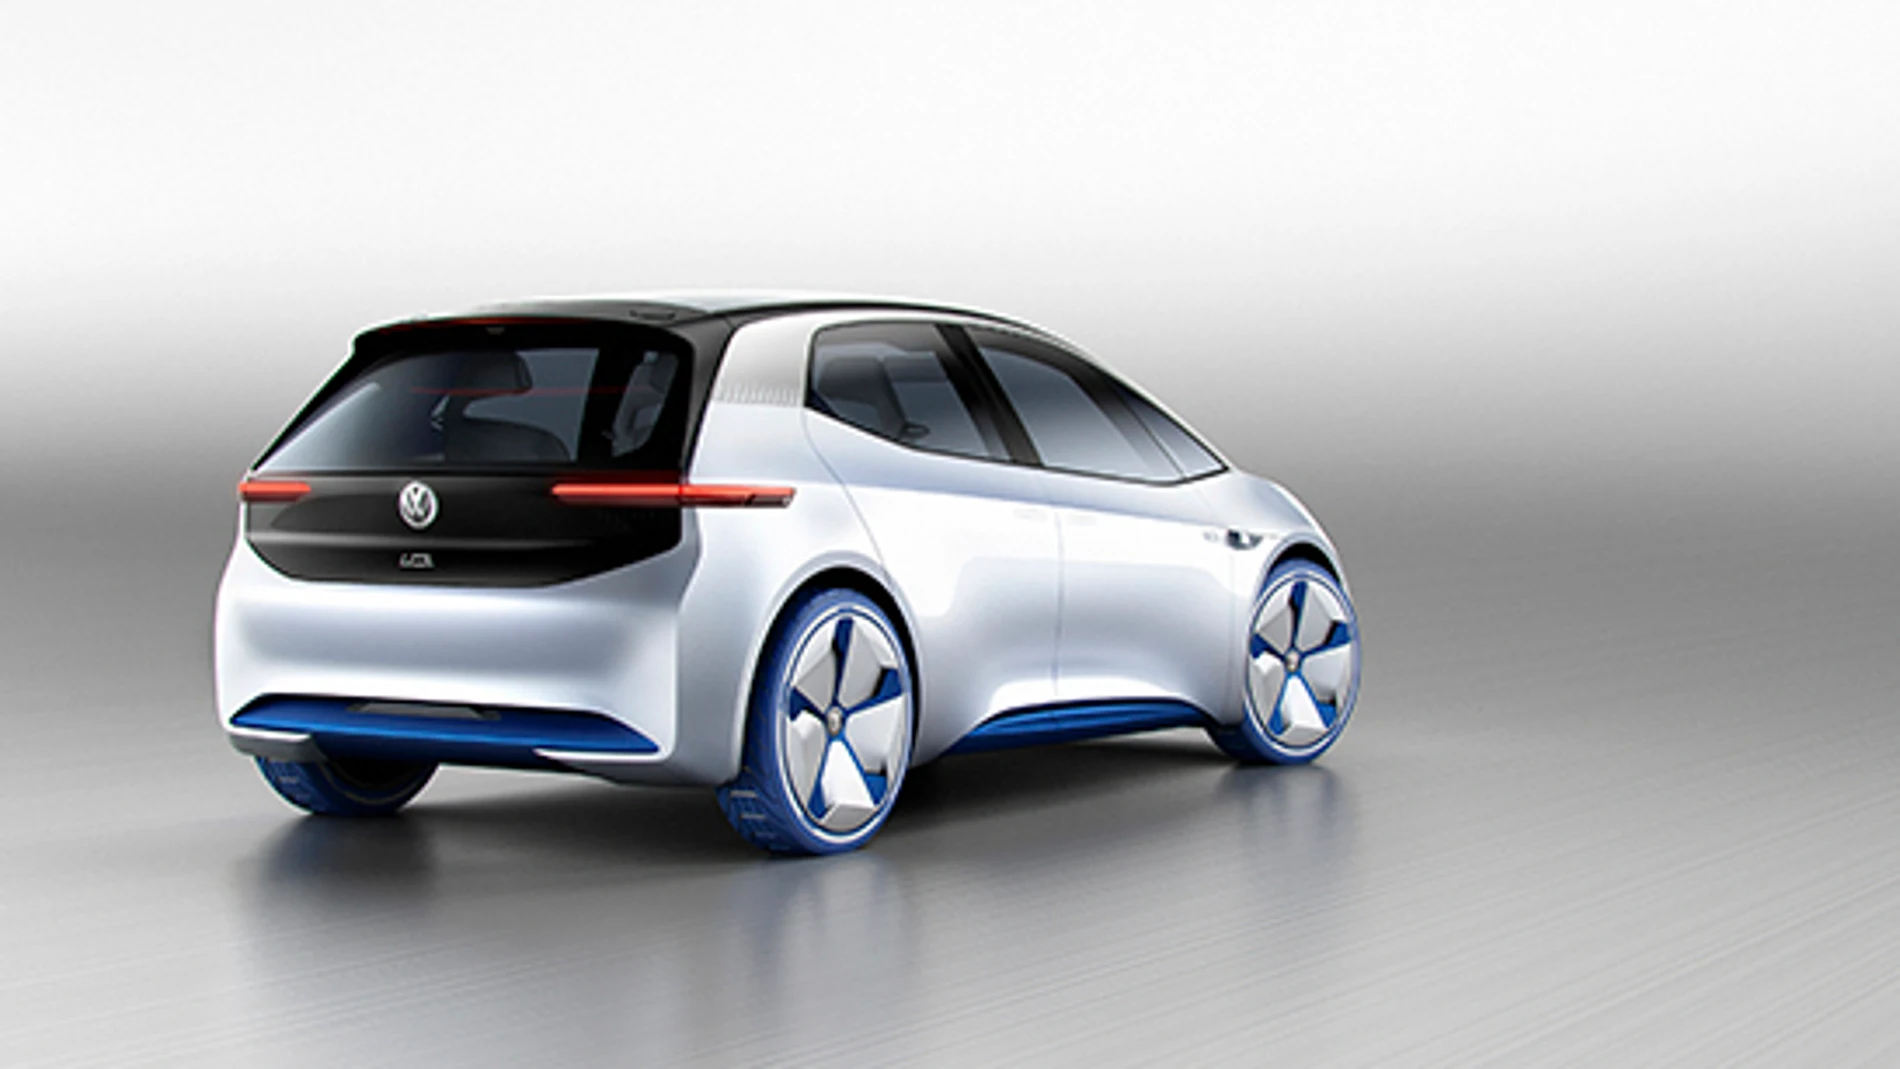 El nuevo eléctrico de Volkswagen se llama I.D y estará en circulación en 2020